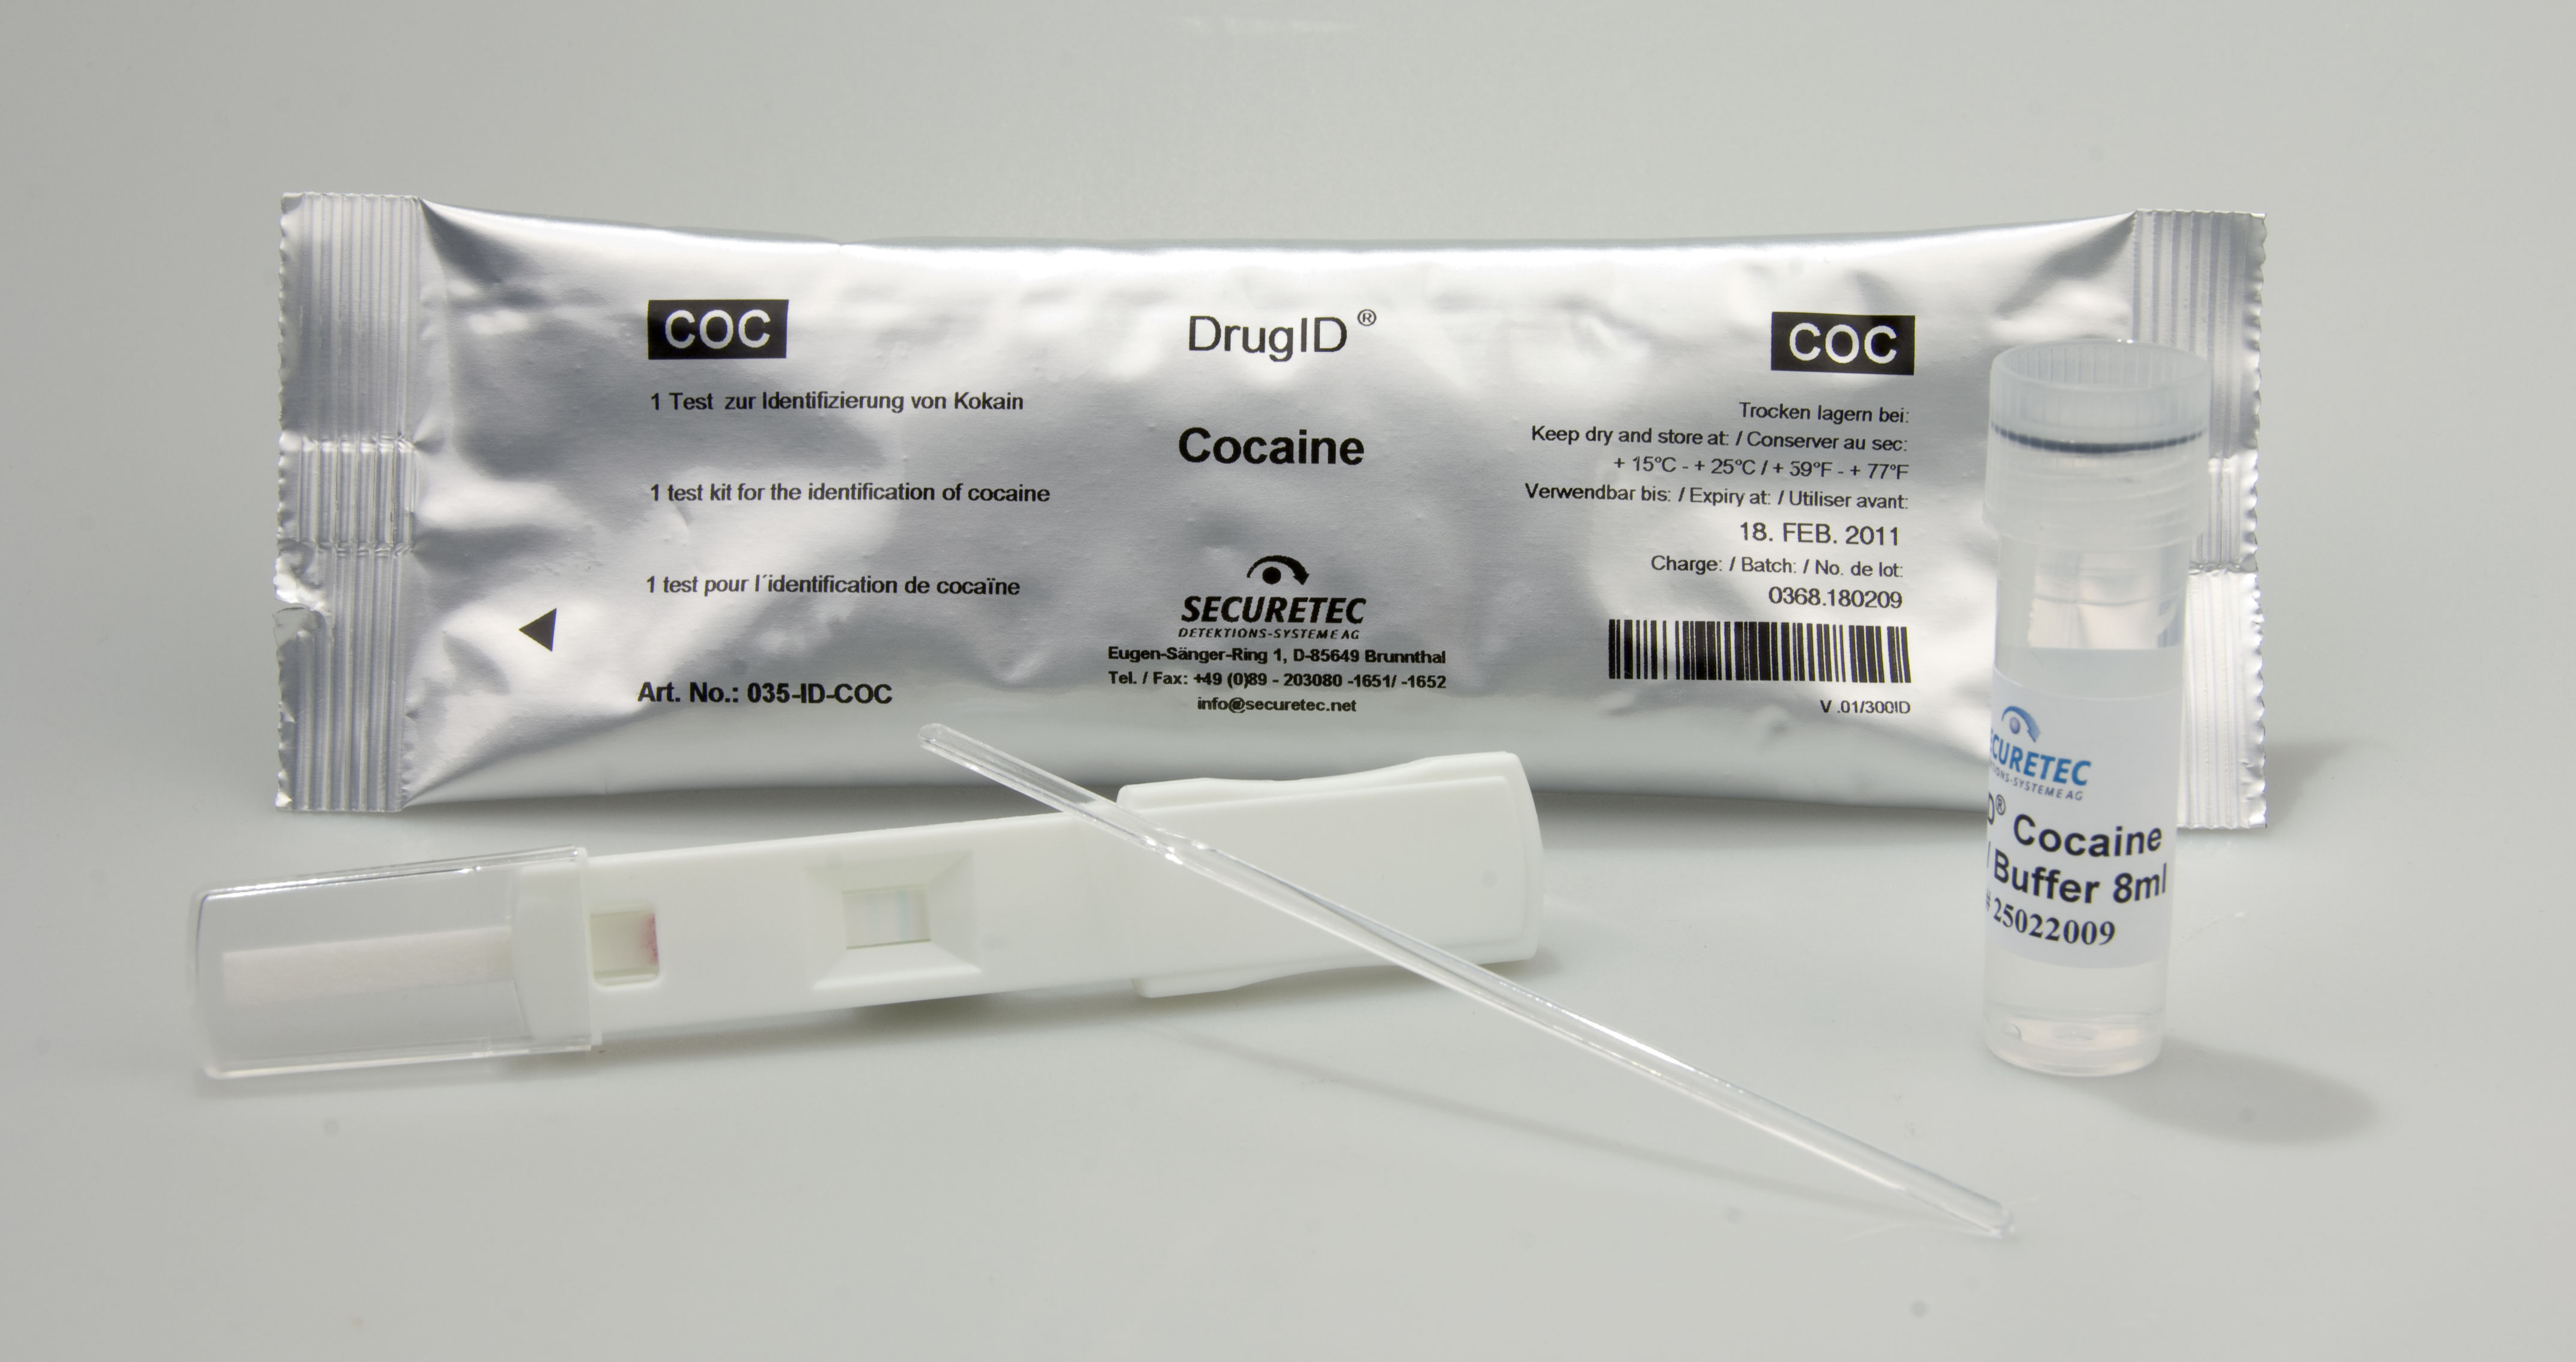 Test de dépistage de drogue universel DrugWipe® A - Securetec  Detektions-Systeme AG